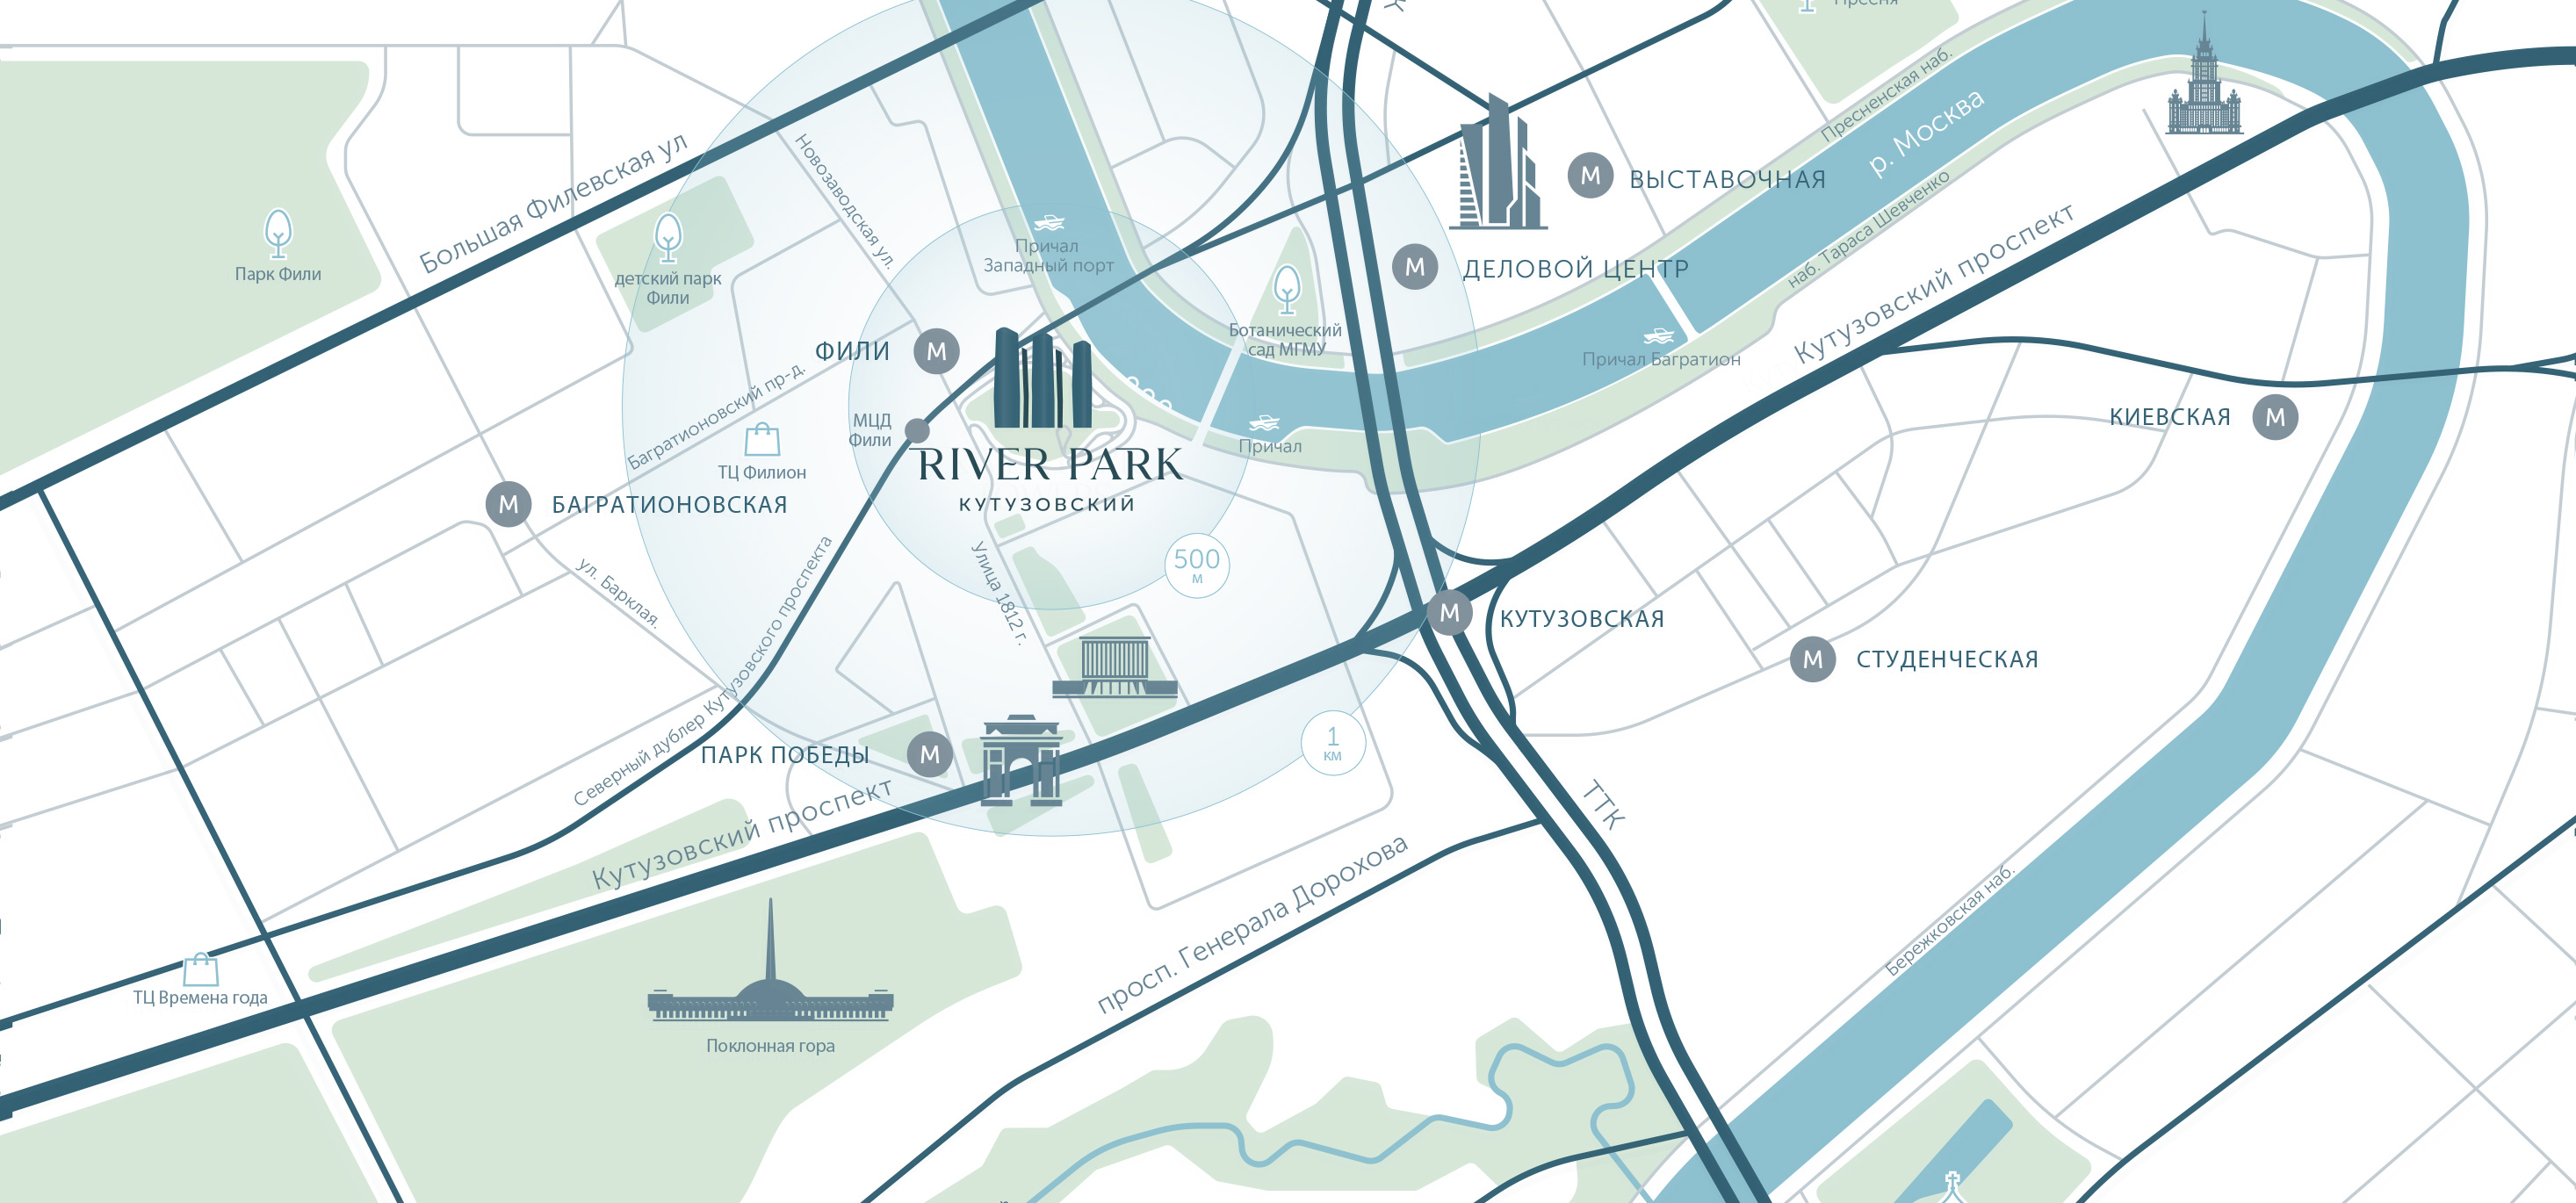 Карта объектов рядом с River Park Towers Кутузовский